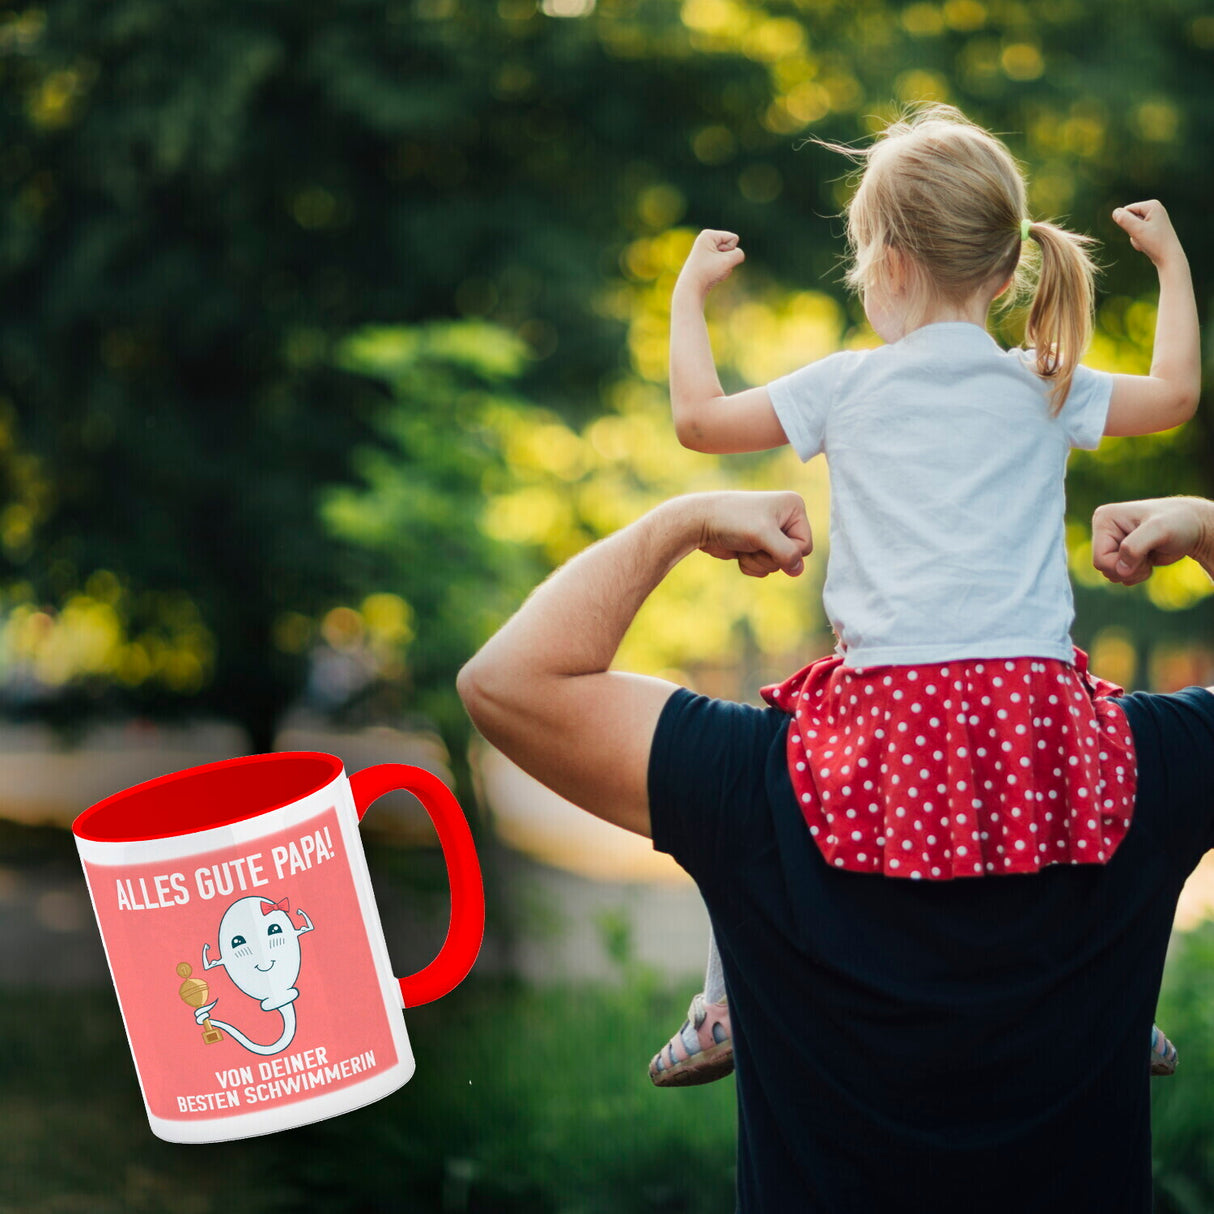 Alles gute Papa von deiner besten Schwimmerin Kaffeebecher zum Vatertag